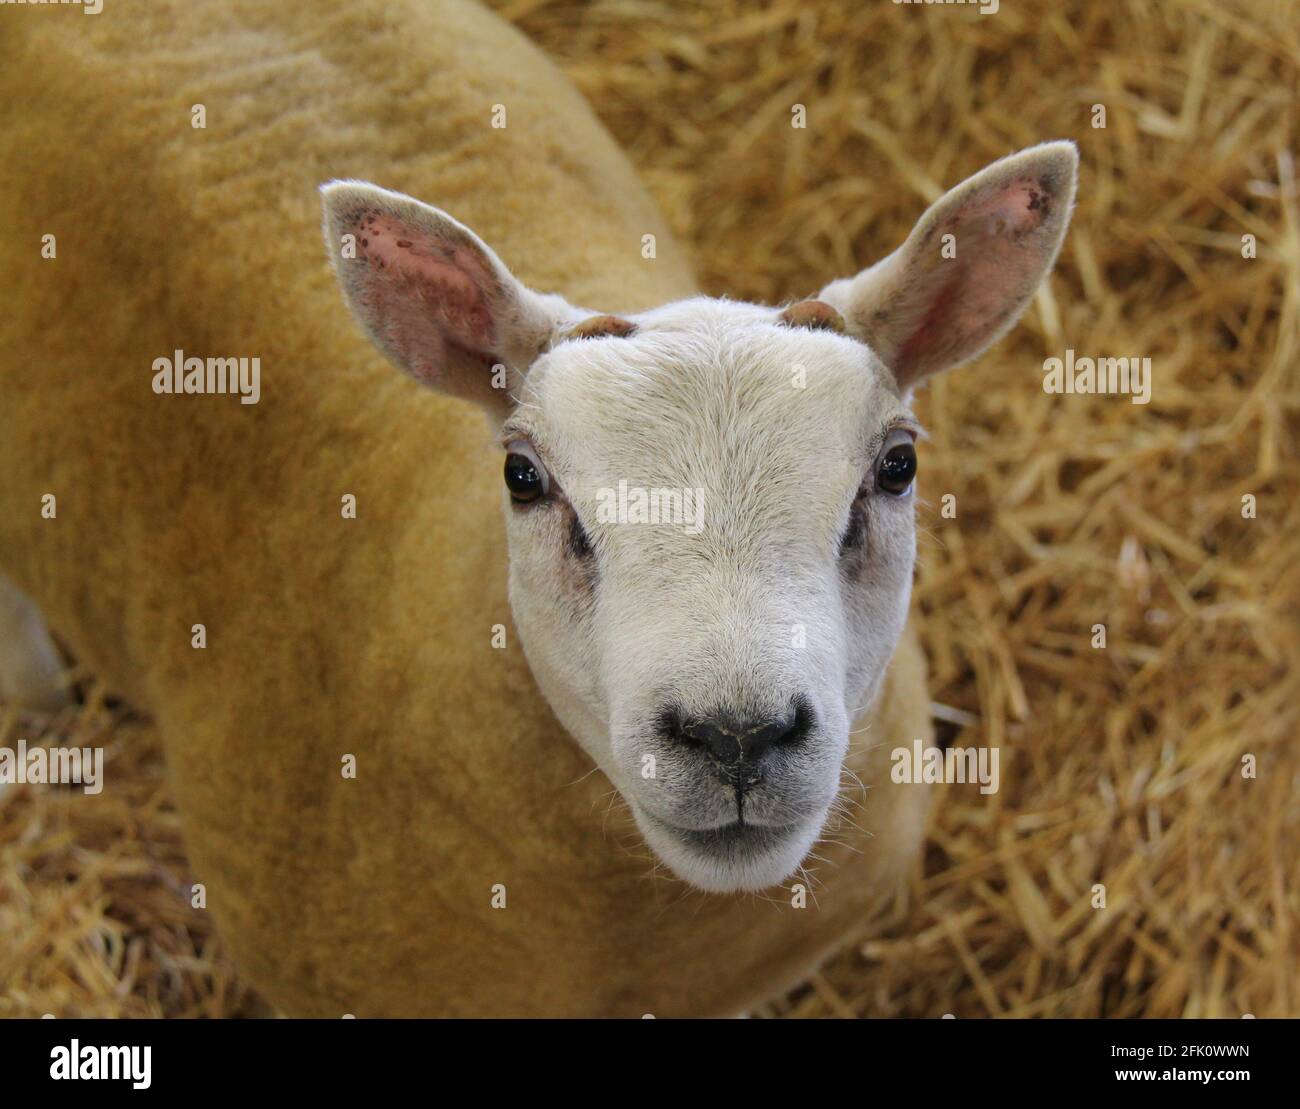 Le visage d'un animal de ferme de moutons Beltex Champion. Banque D'Images